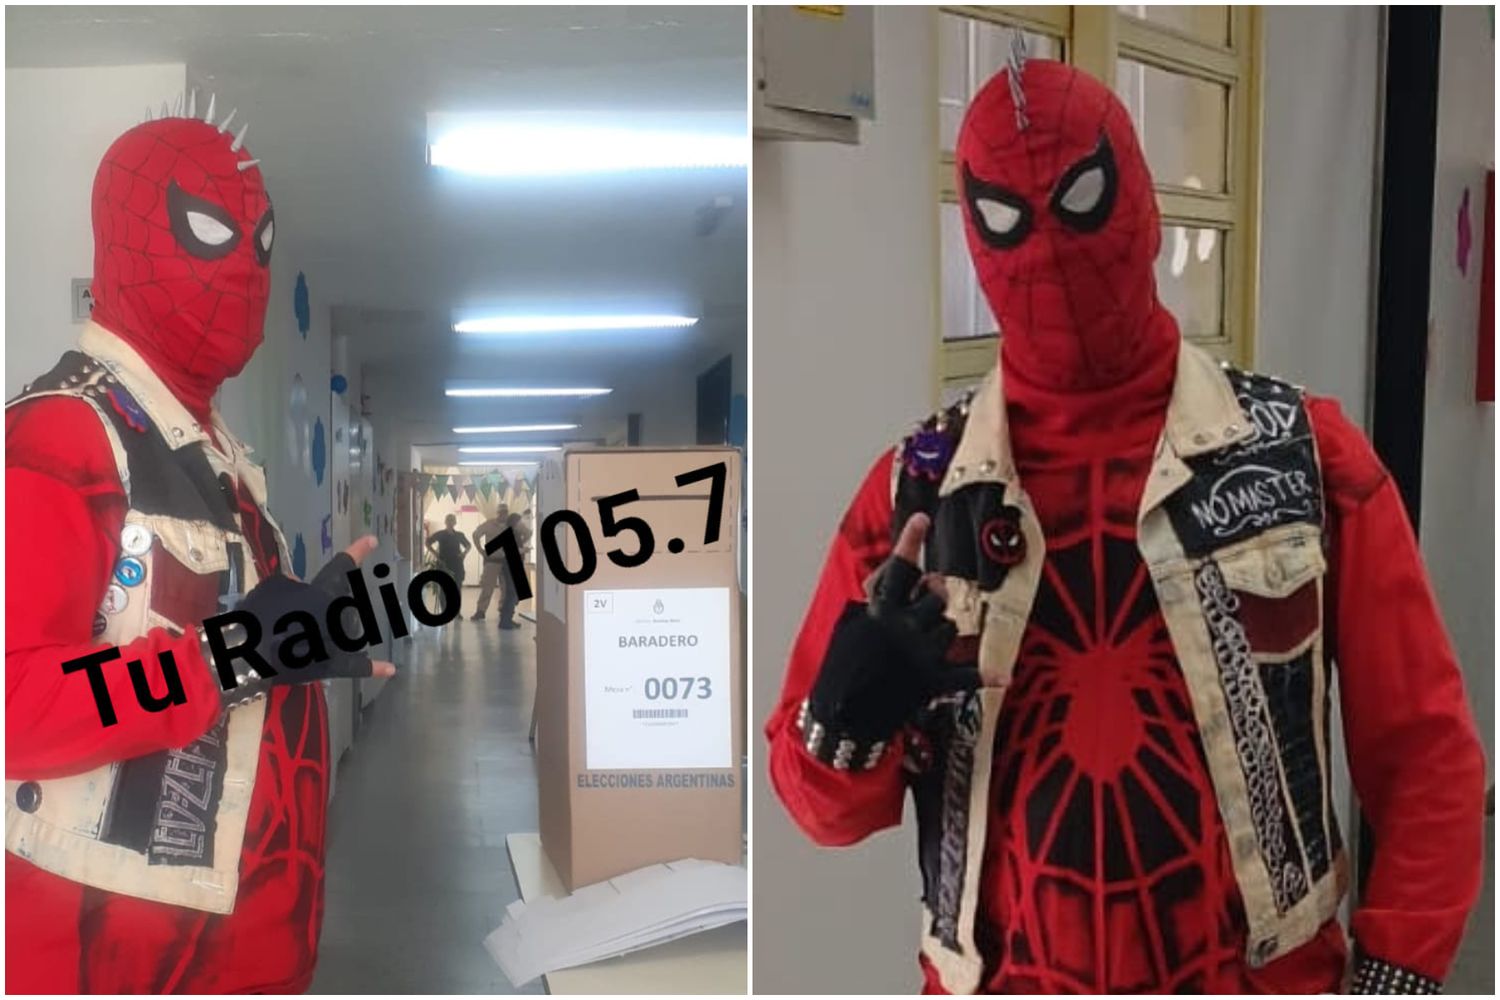 Un gran poder conlleva una gran responsabilidad: Al igual que en octubre, Spiderman volvió a votar en Baradero